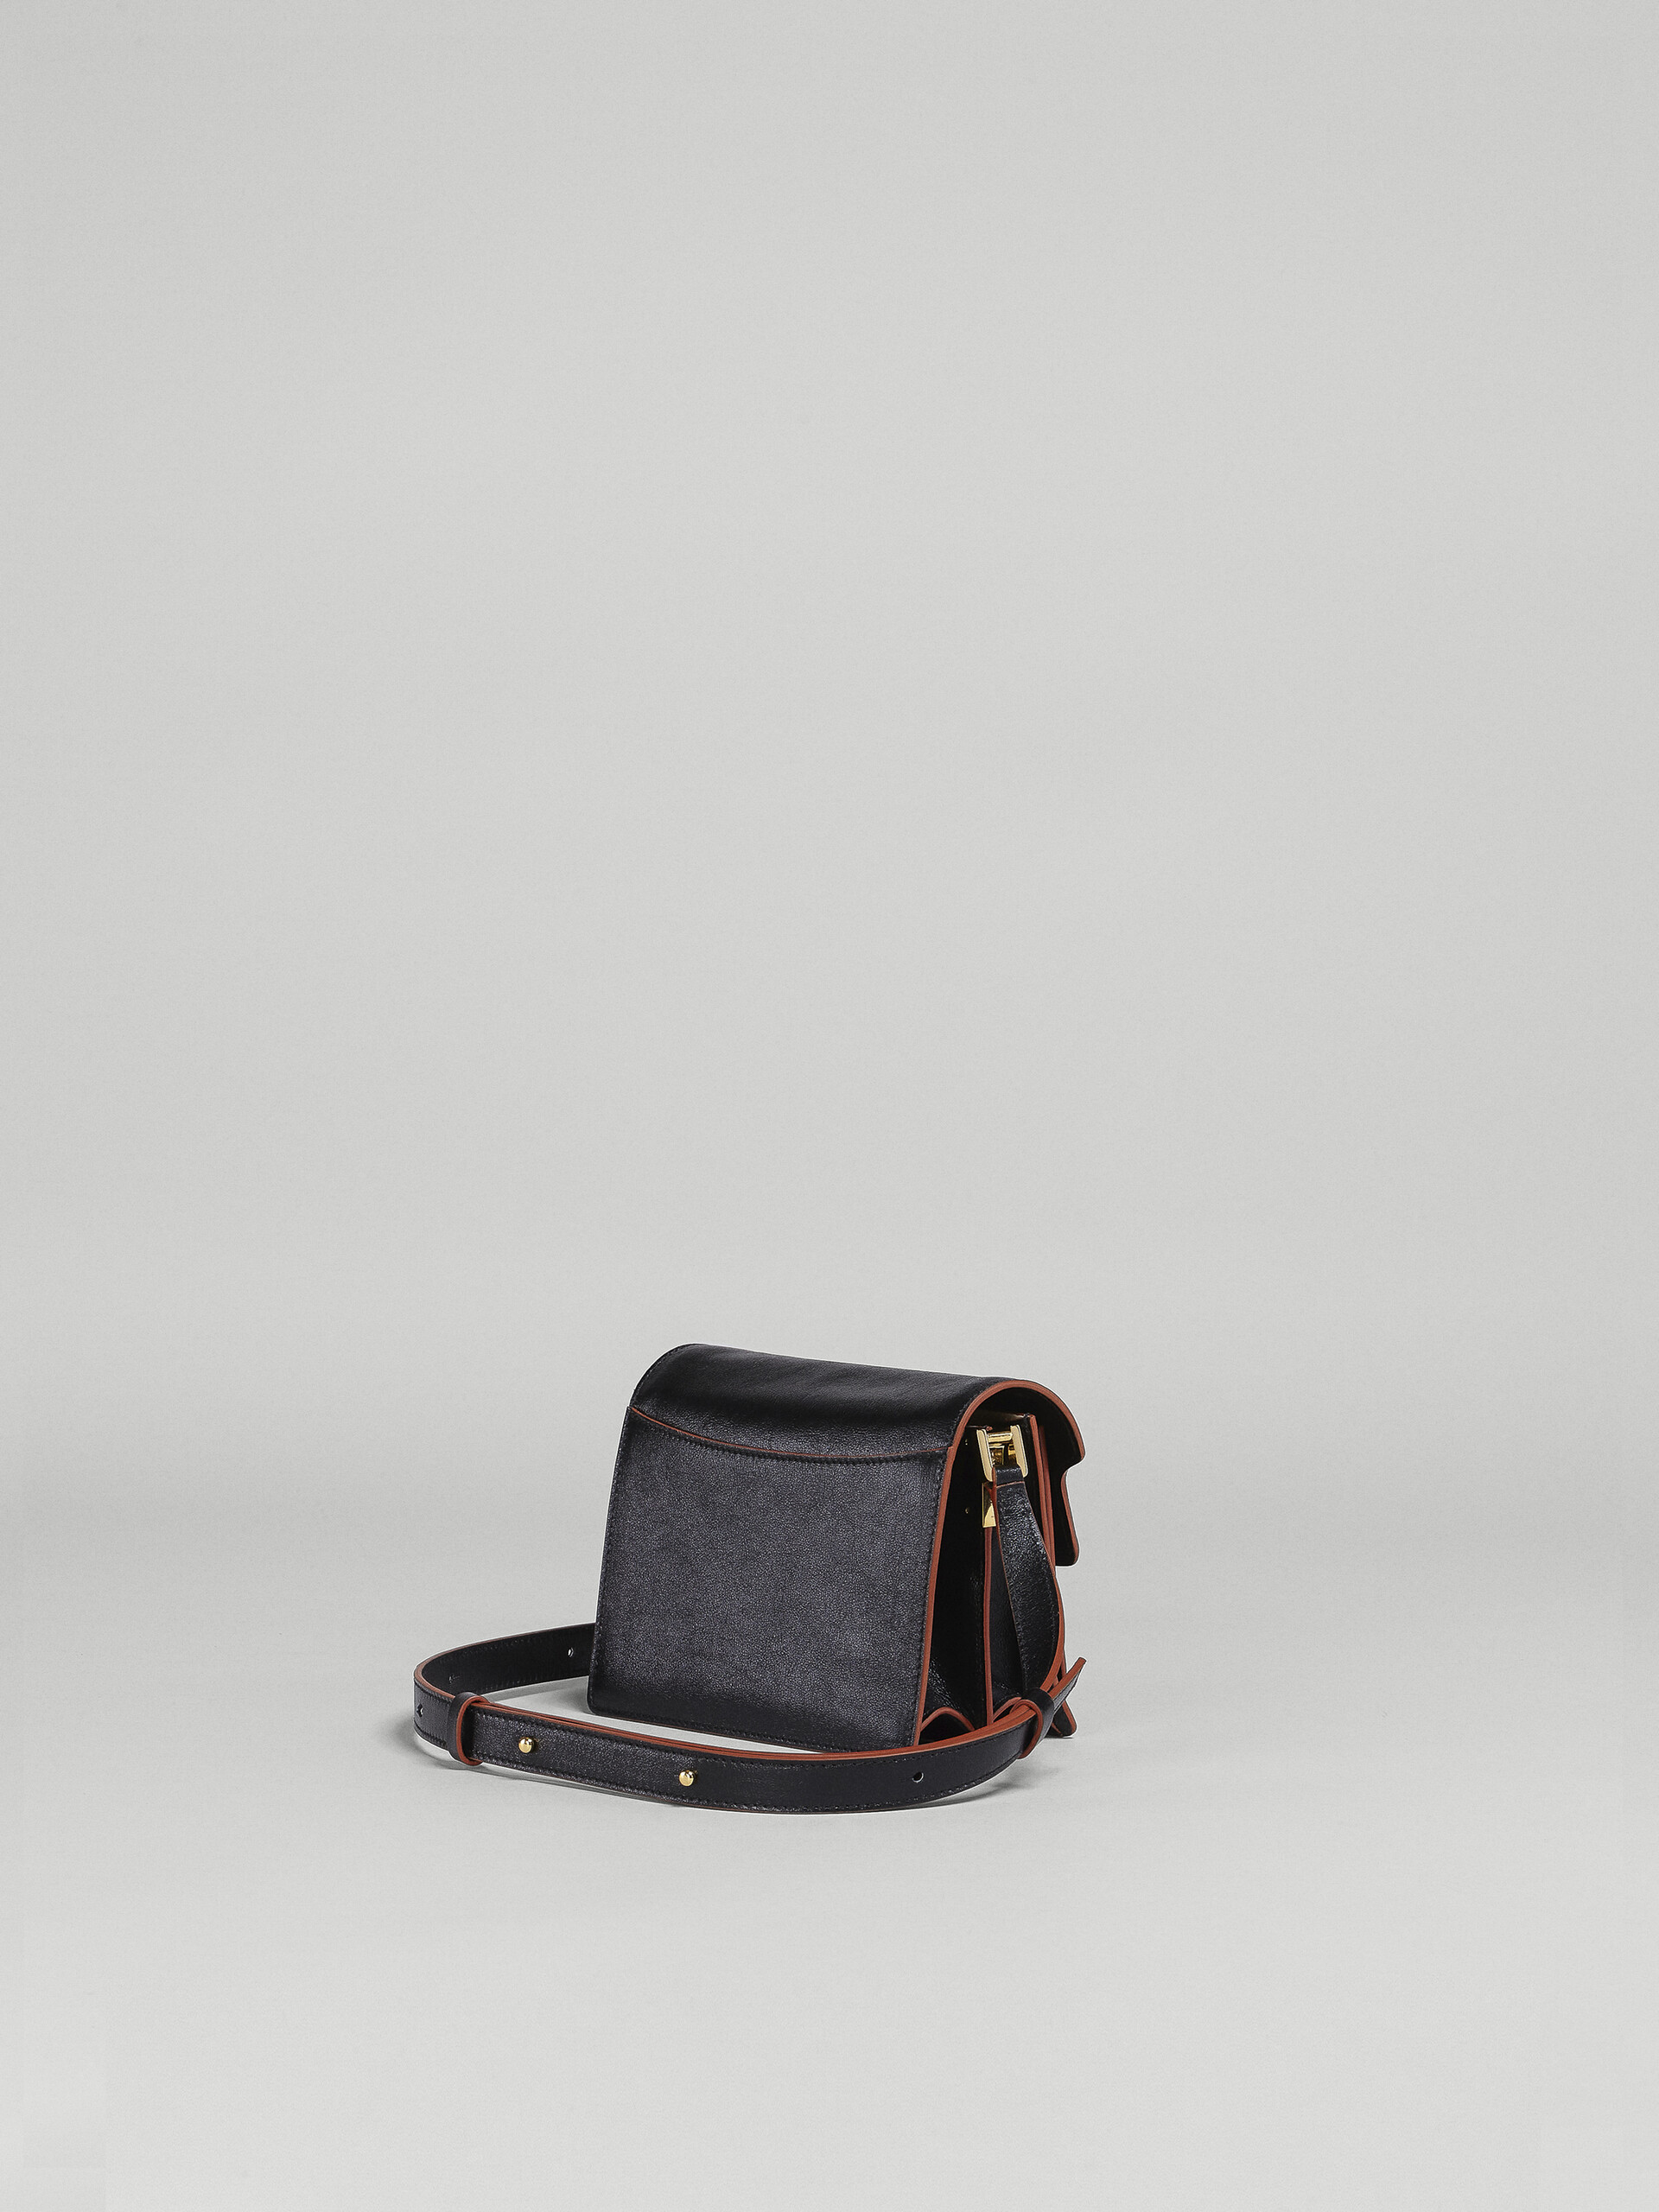 Trunk Soft Bag Mini in pelle nera - Borse a spalla - Image 3